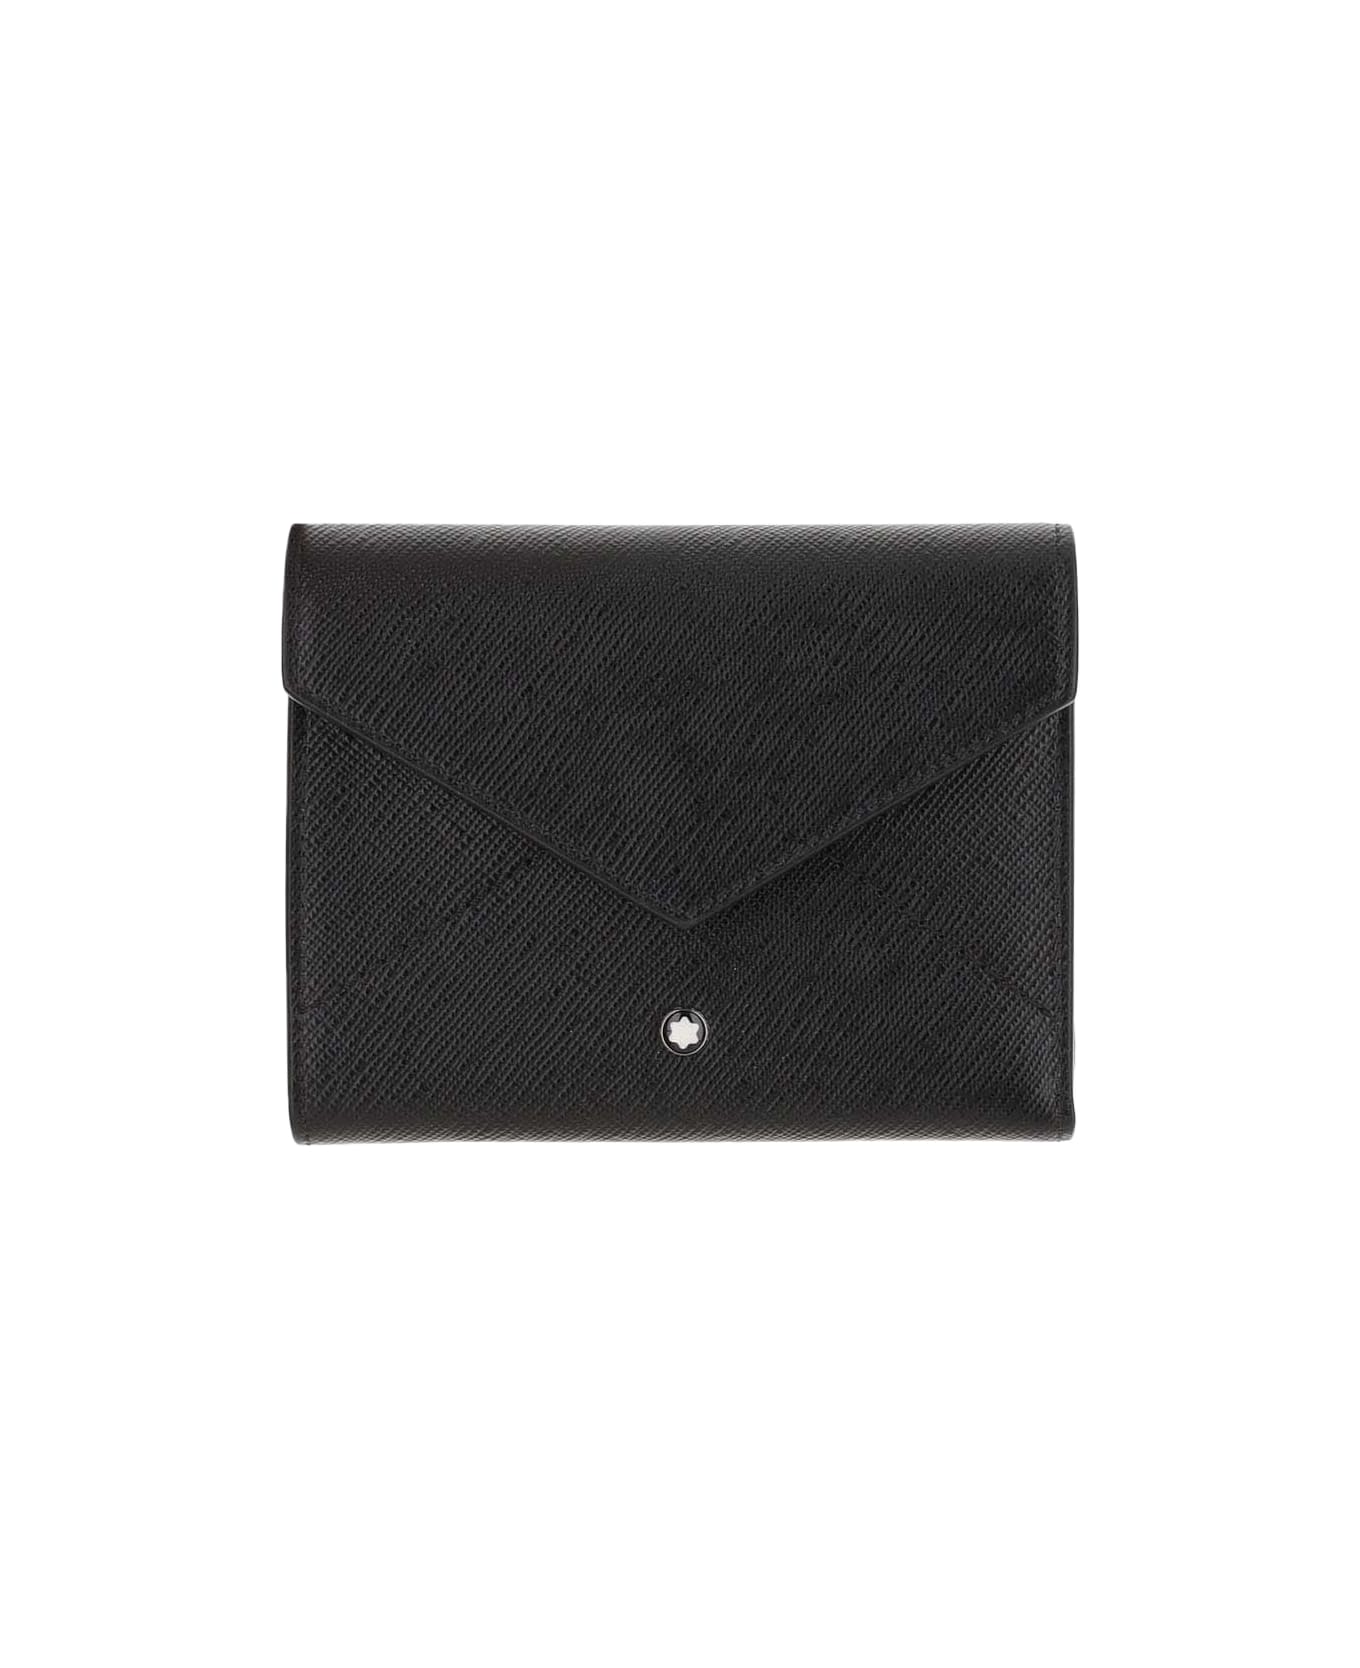 Montblanc Trio Sartorial Wallet 6 Compartments - Black